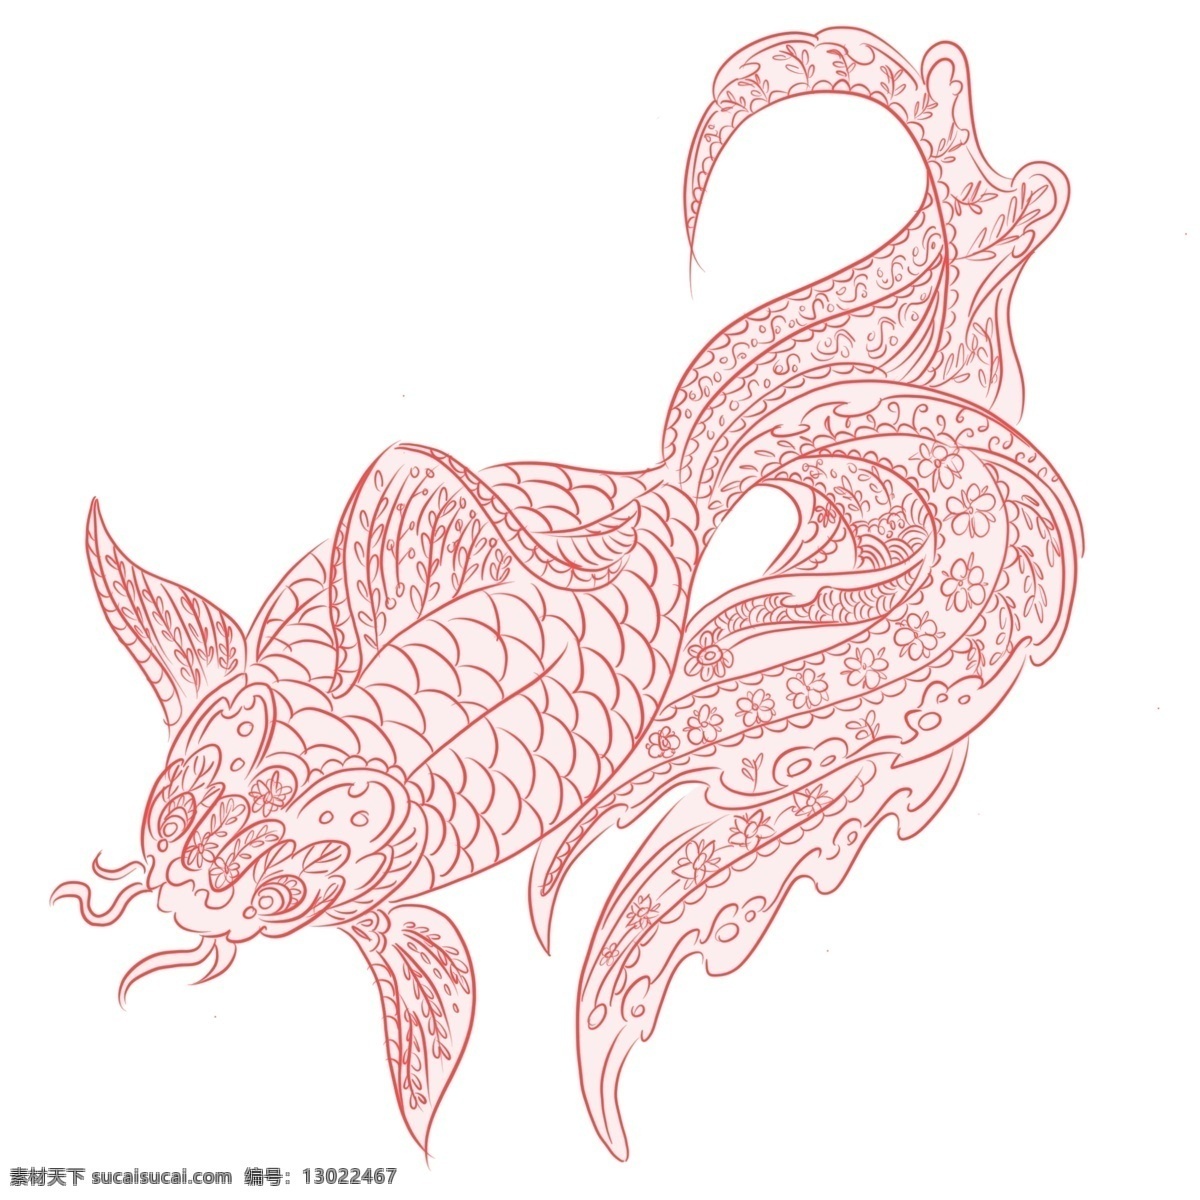 手绘 动物 中国 风 红色 金鱼 手绘动物 手绘金鱼 中国风 中国风金鱼 红色金鱼